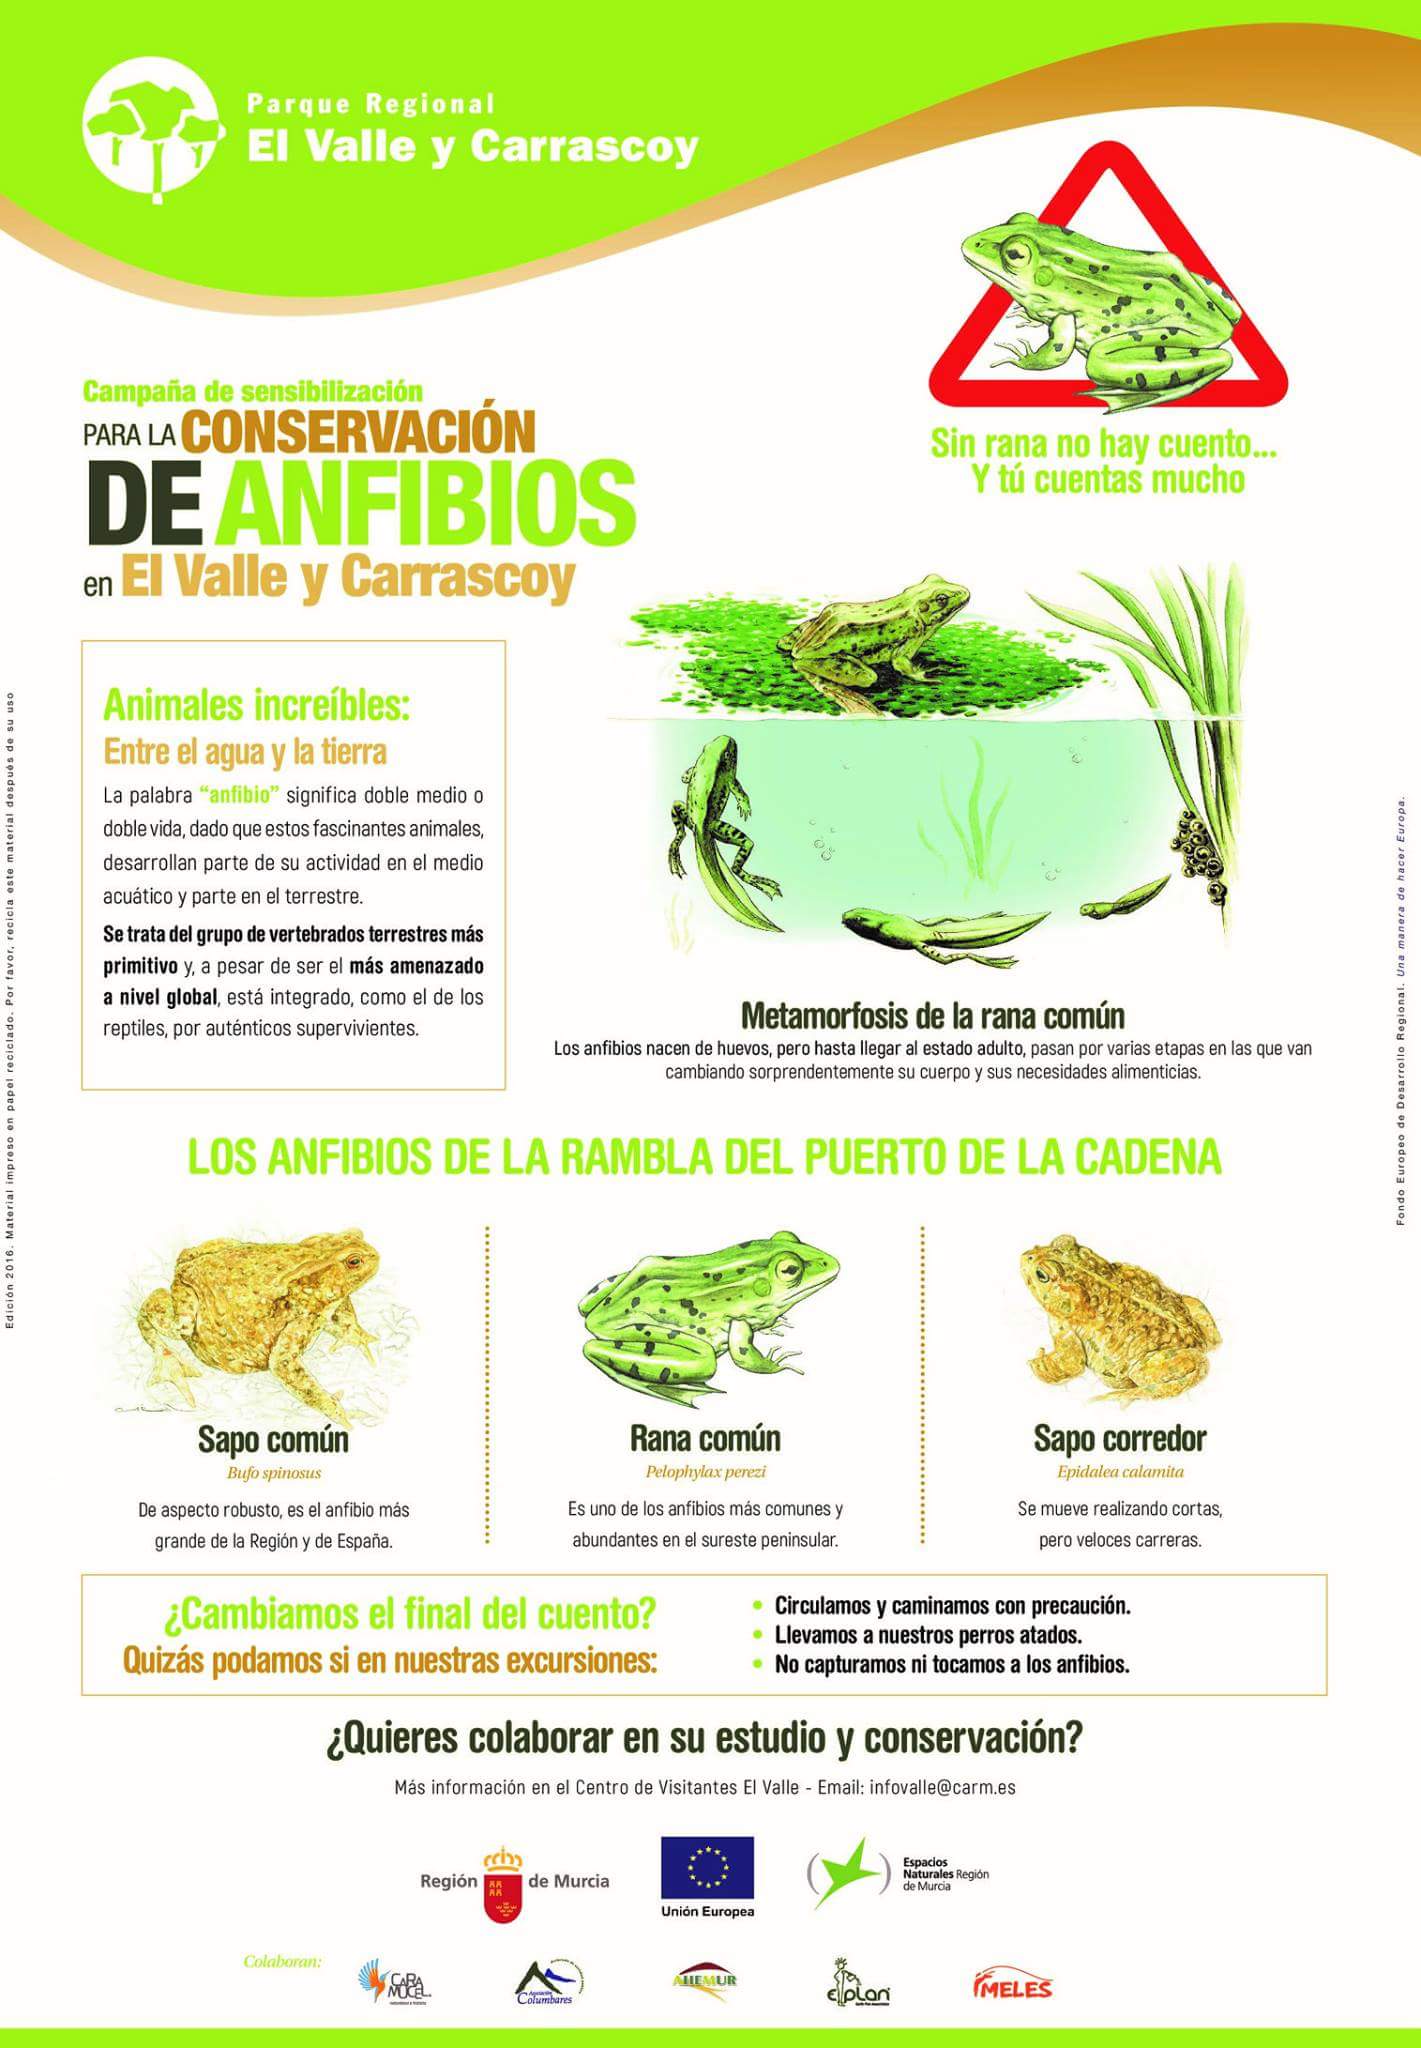 Detalles de los anfibios que pueblan el PR El Valle y Carrascoy